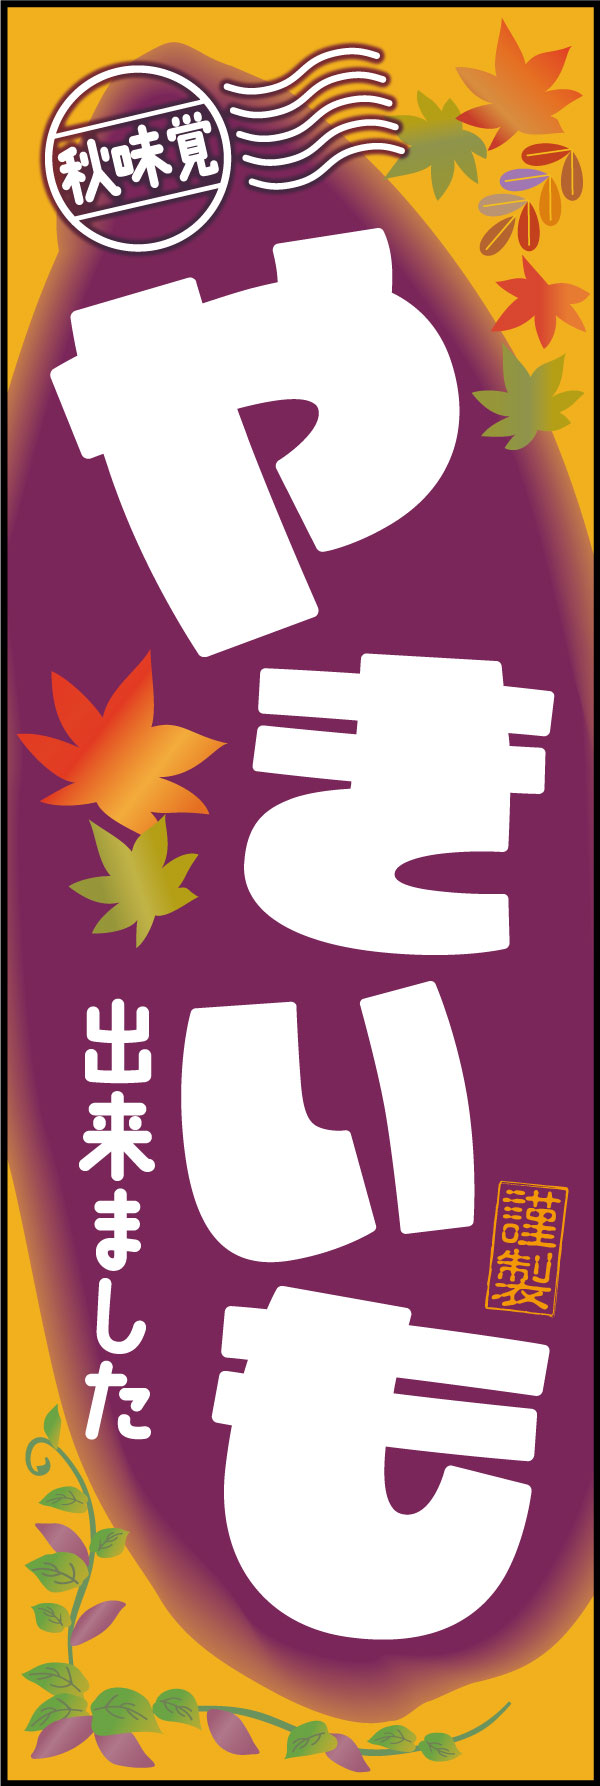 やきいも 174_01 秋のスイーツ「やきいも」のぼりです。遠くからでも分かりやすい黄色・紫のさつま芋カラーの配色と、紅葉のイラストが彩り豊かな秋の味覚を演出しています。（M.H）